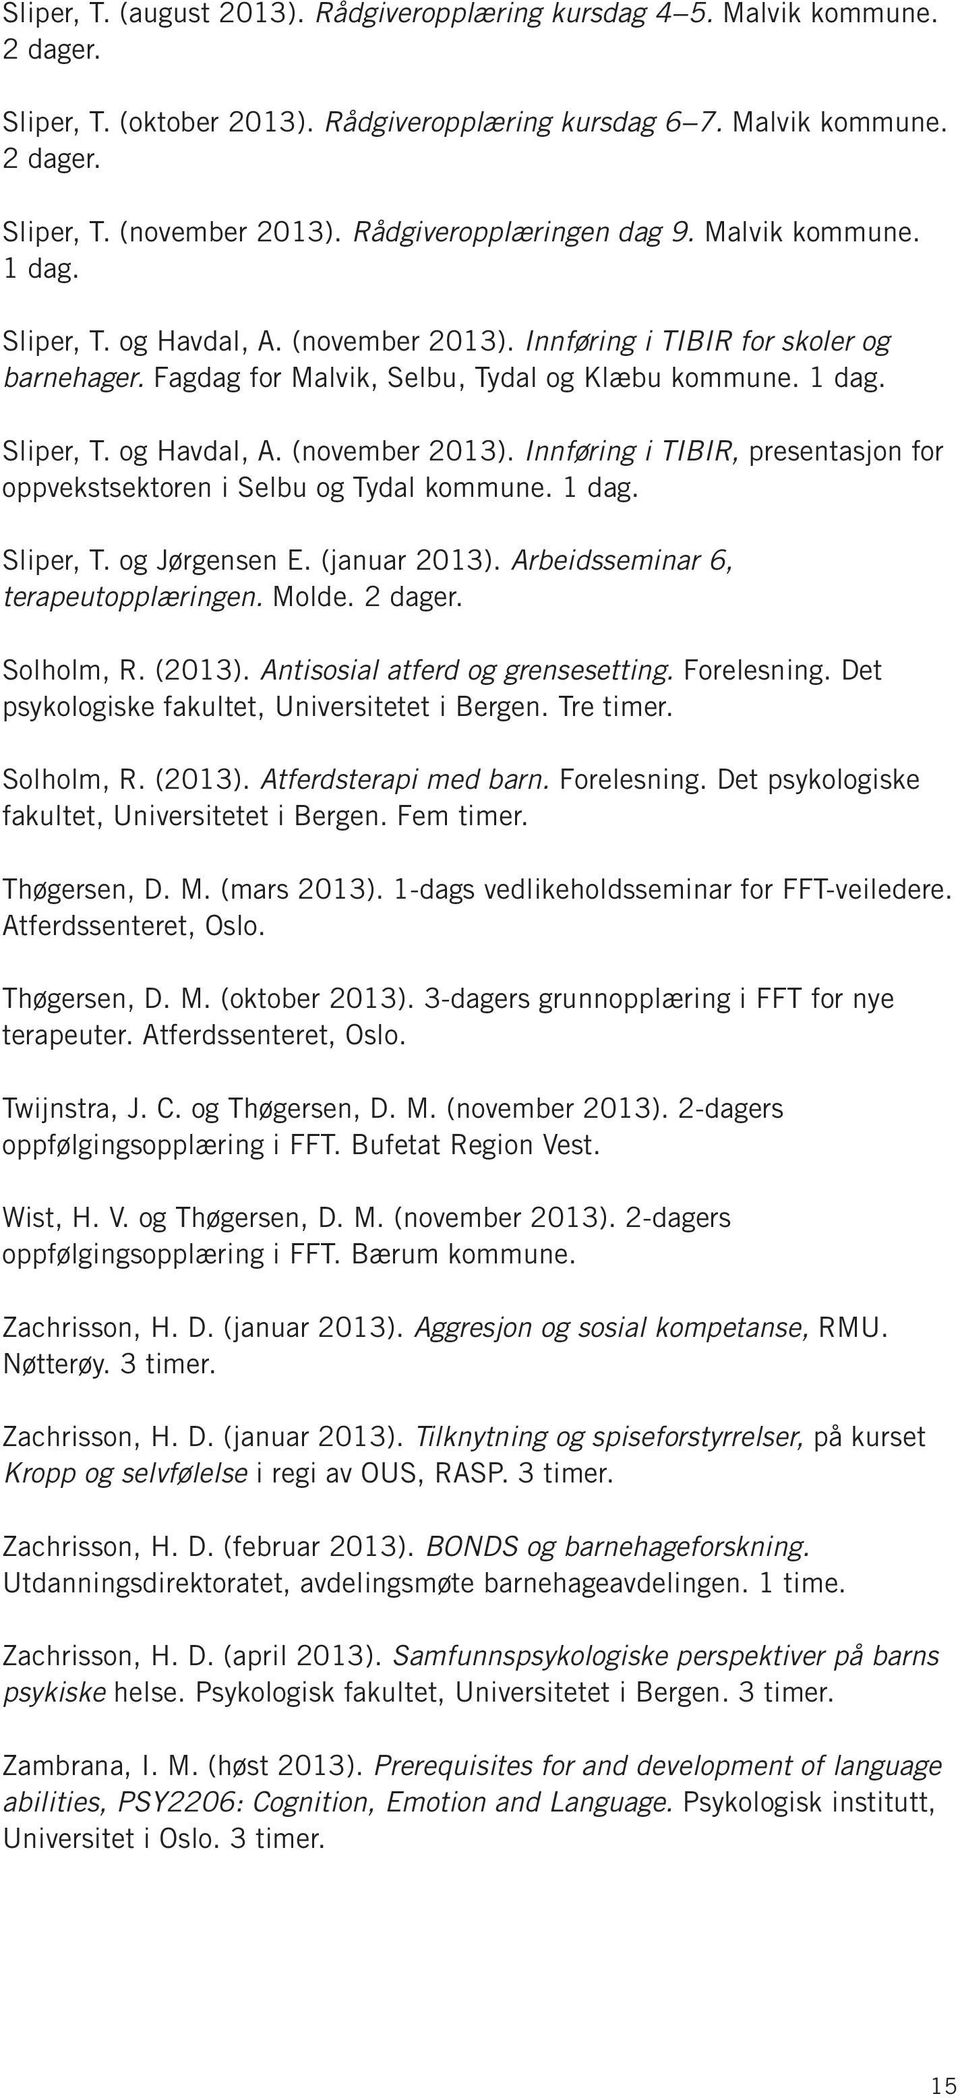 1 dag. Sliper, T. og Jørgensen E. (januar 2013). Arbeidsseminar 6, terapeutopplæringen. Molde. 2 dager. Solholm, R. (2013). Antisosial atferd og grensesetting. Forelesning.